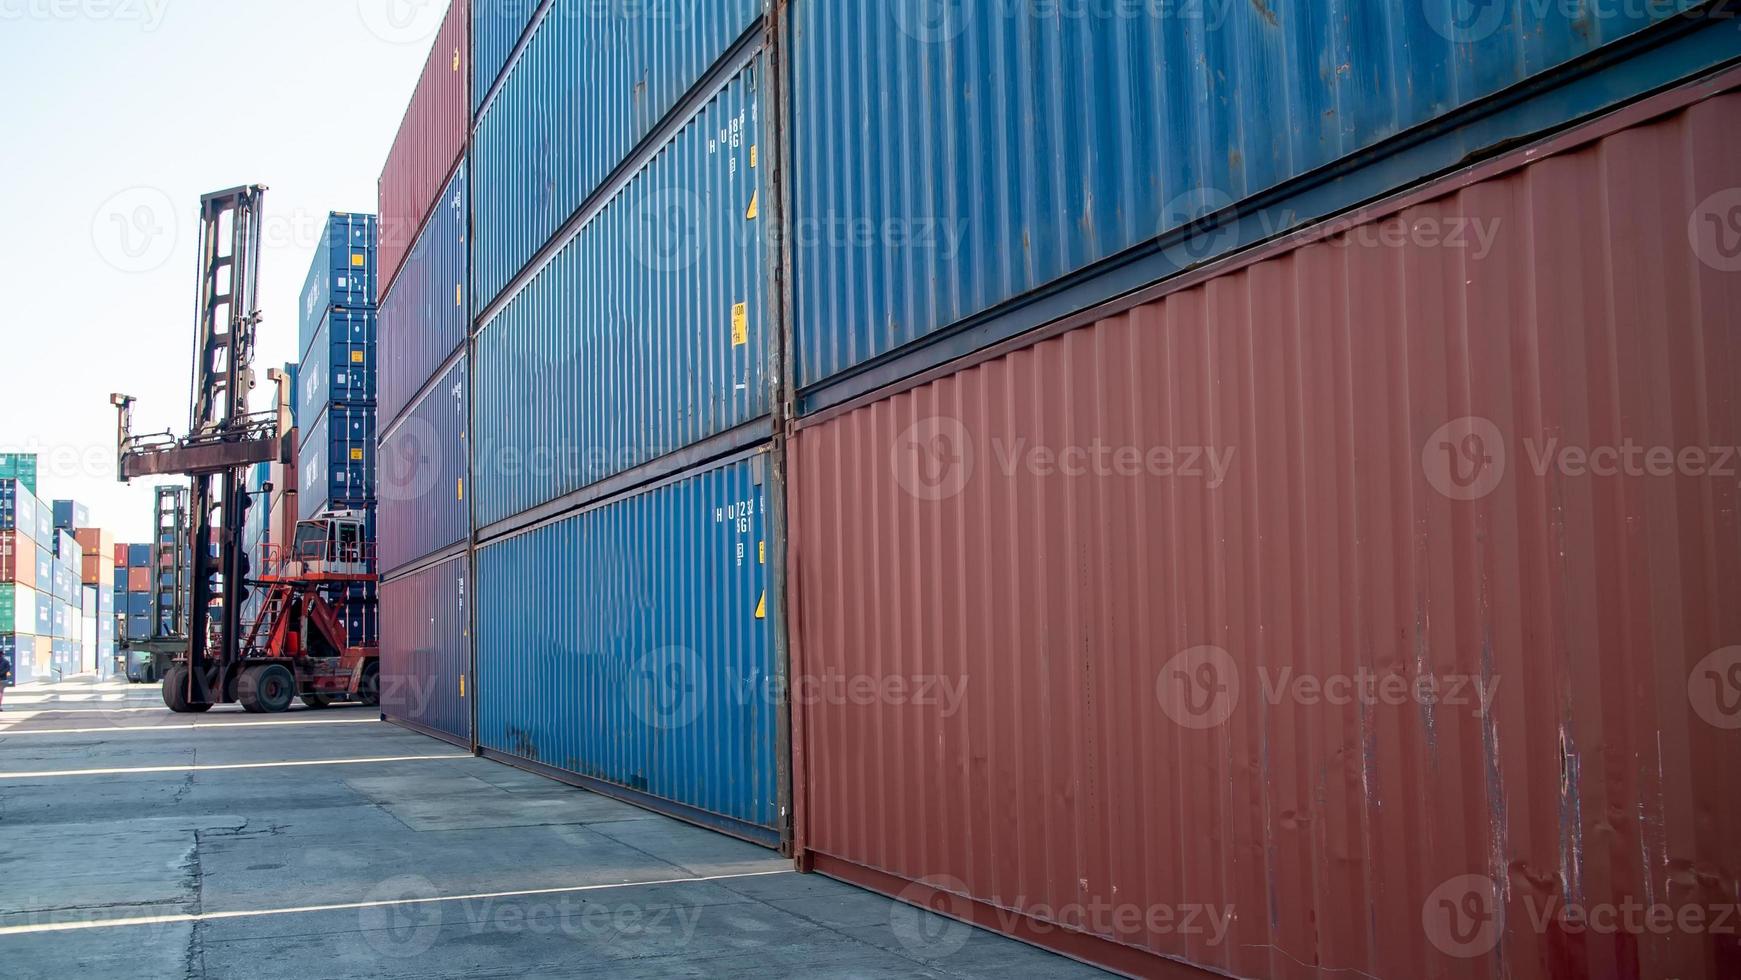 puerto de carga de contenedores astillero manejo de almacenamiento de la industria del transporte logístico. fila de contenedores apilables del almacén de distribución de importación y exportación de mercancías. envío logística transporte industrial foto